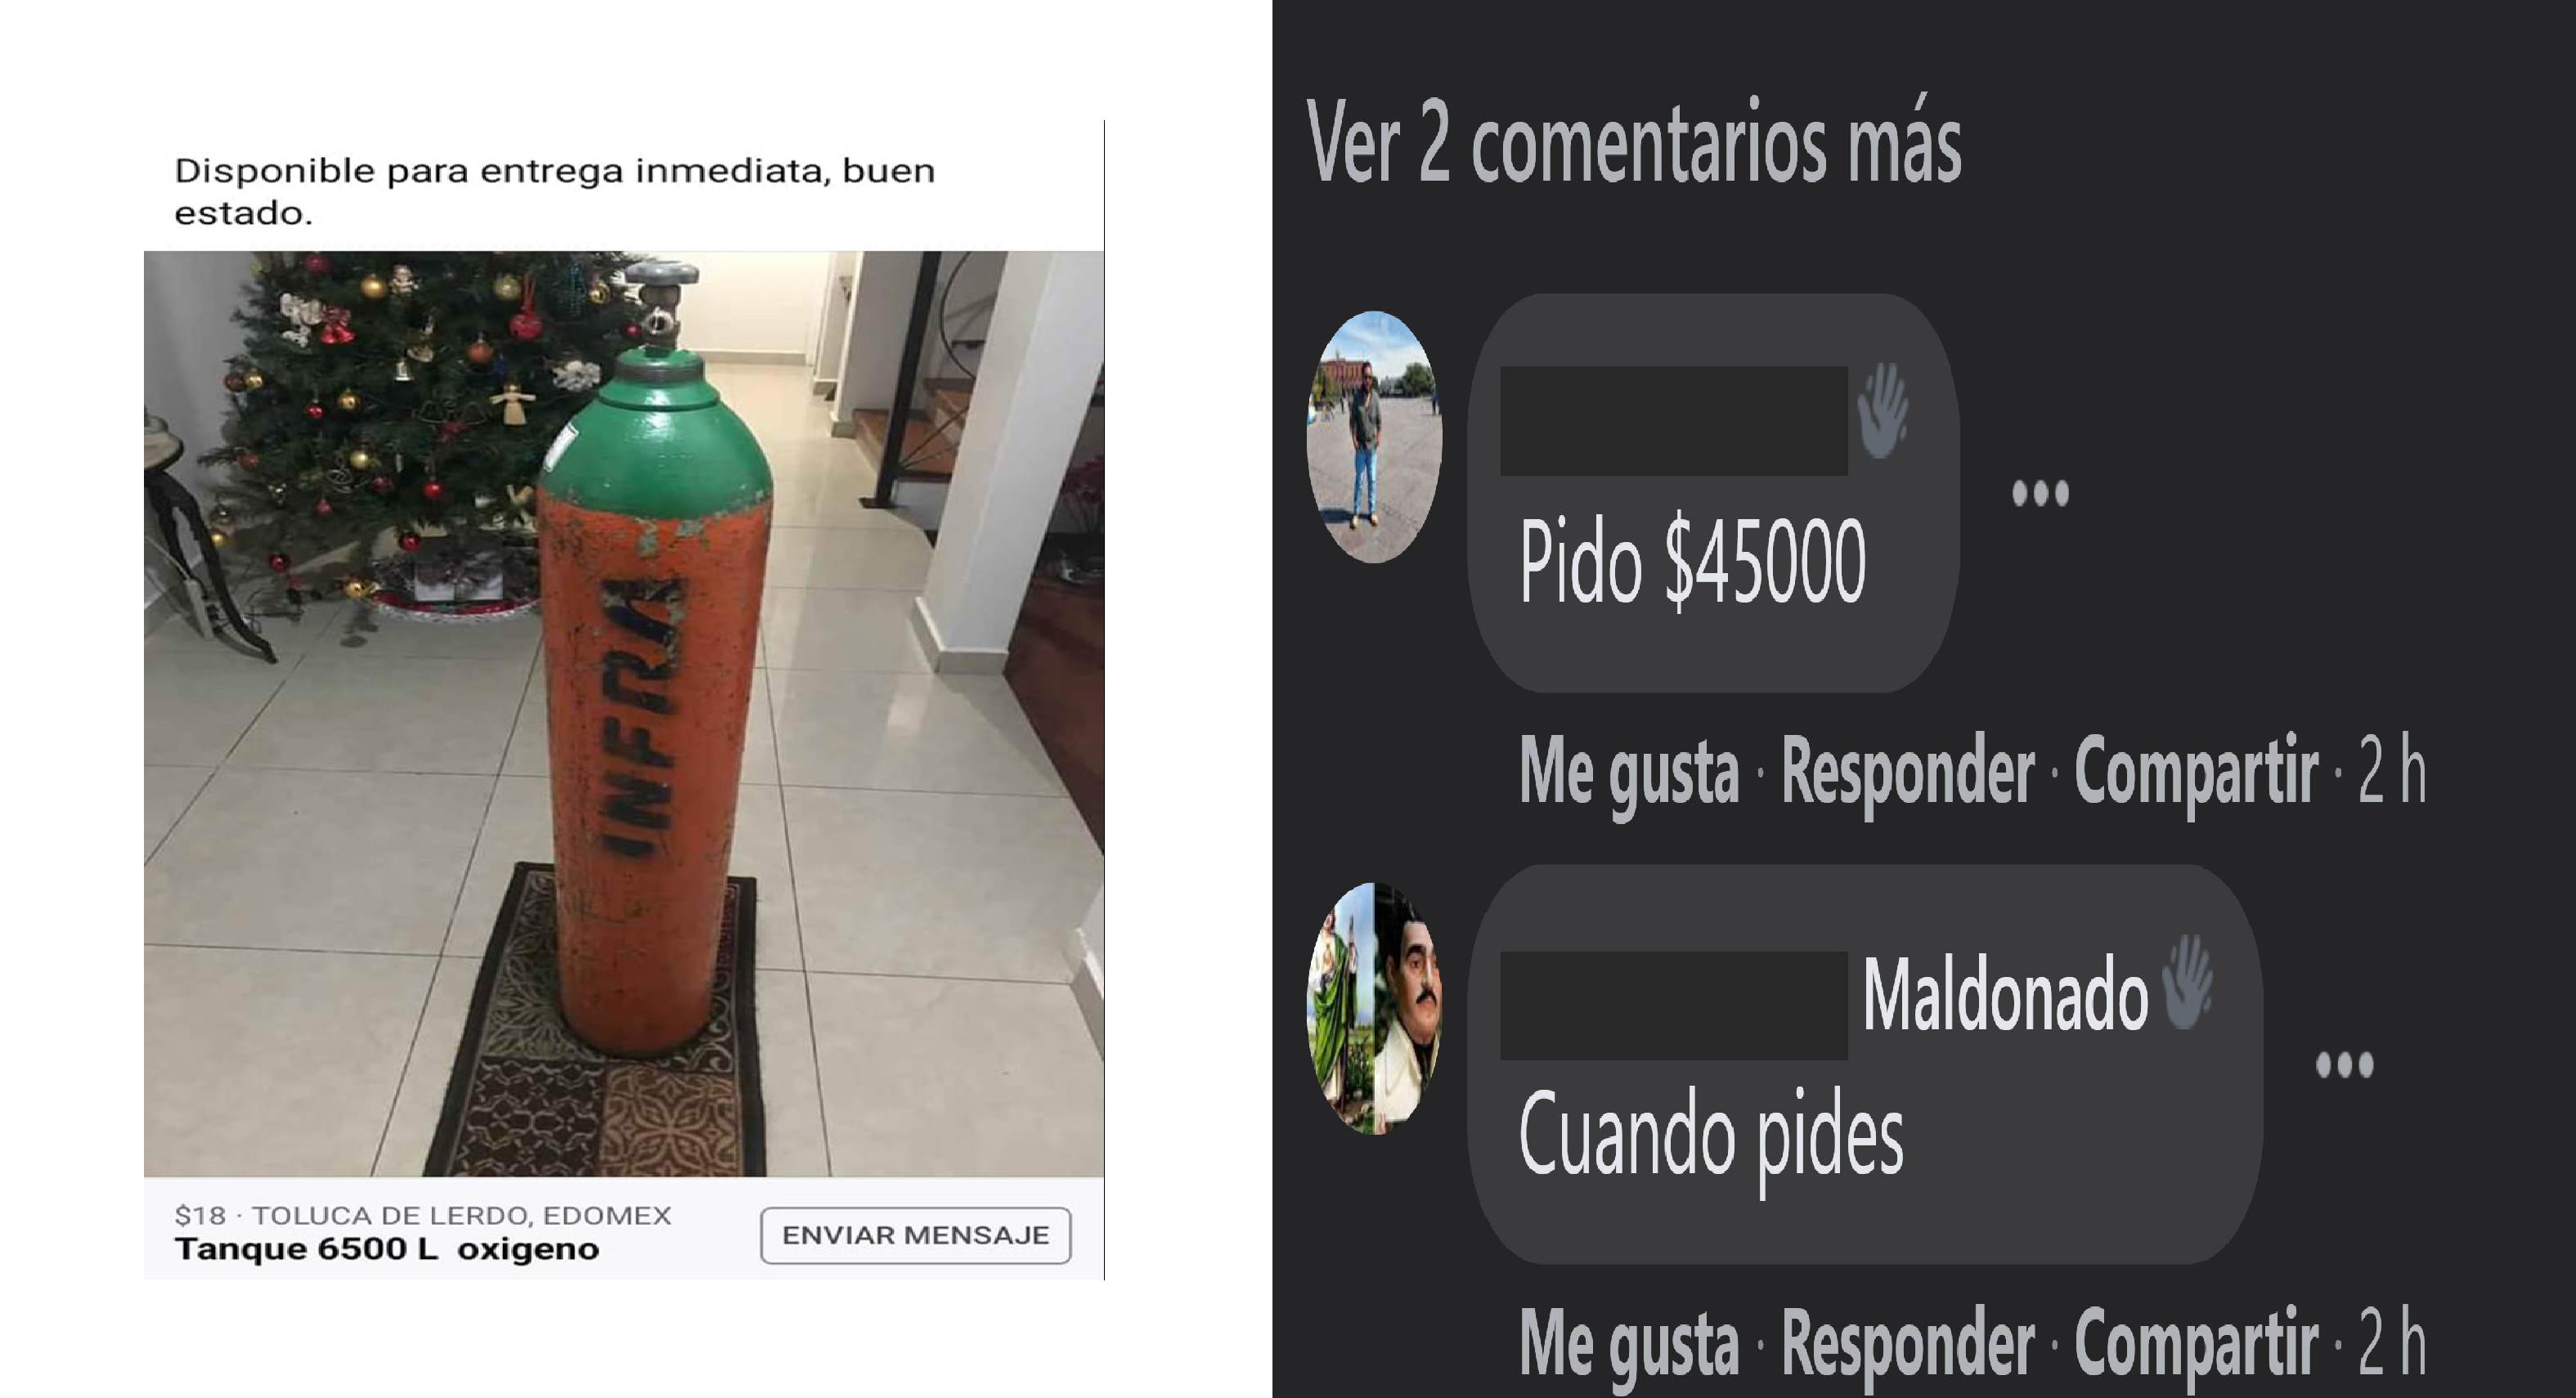 Tanques de oxígeno, abusos y estafas en grupos de Facebook en Toluca